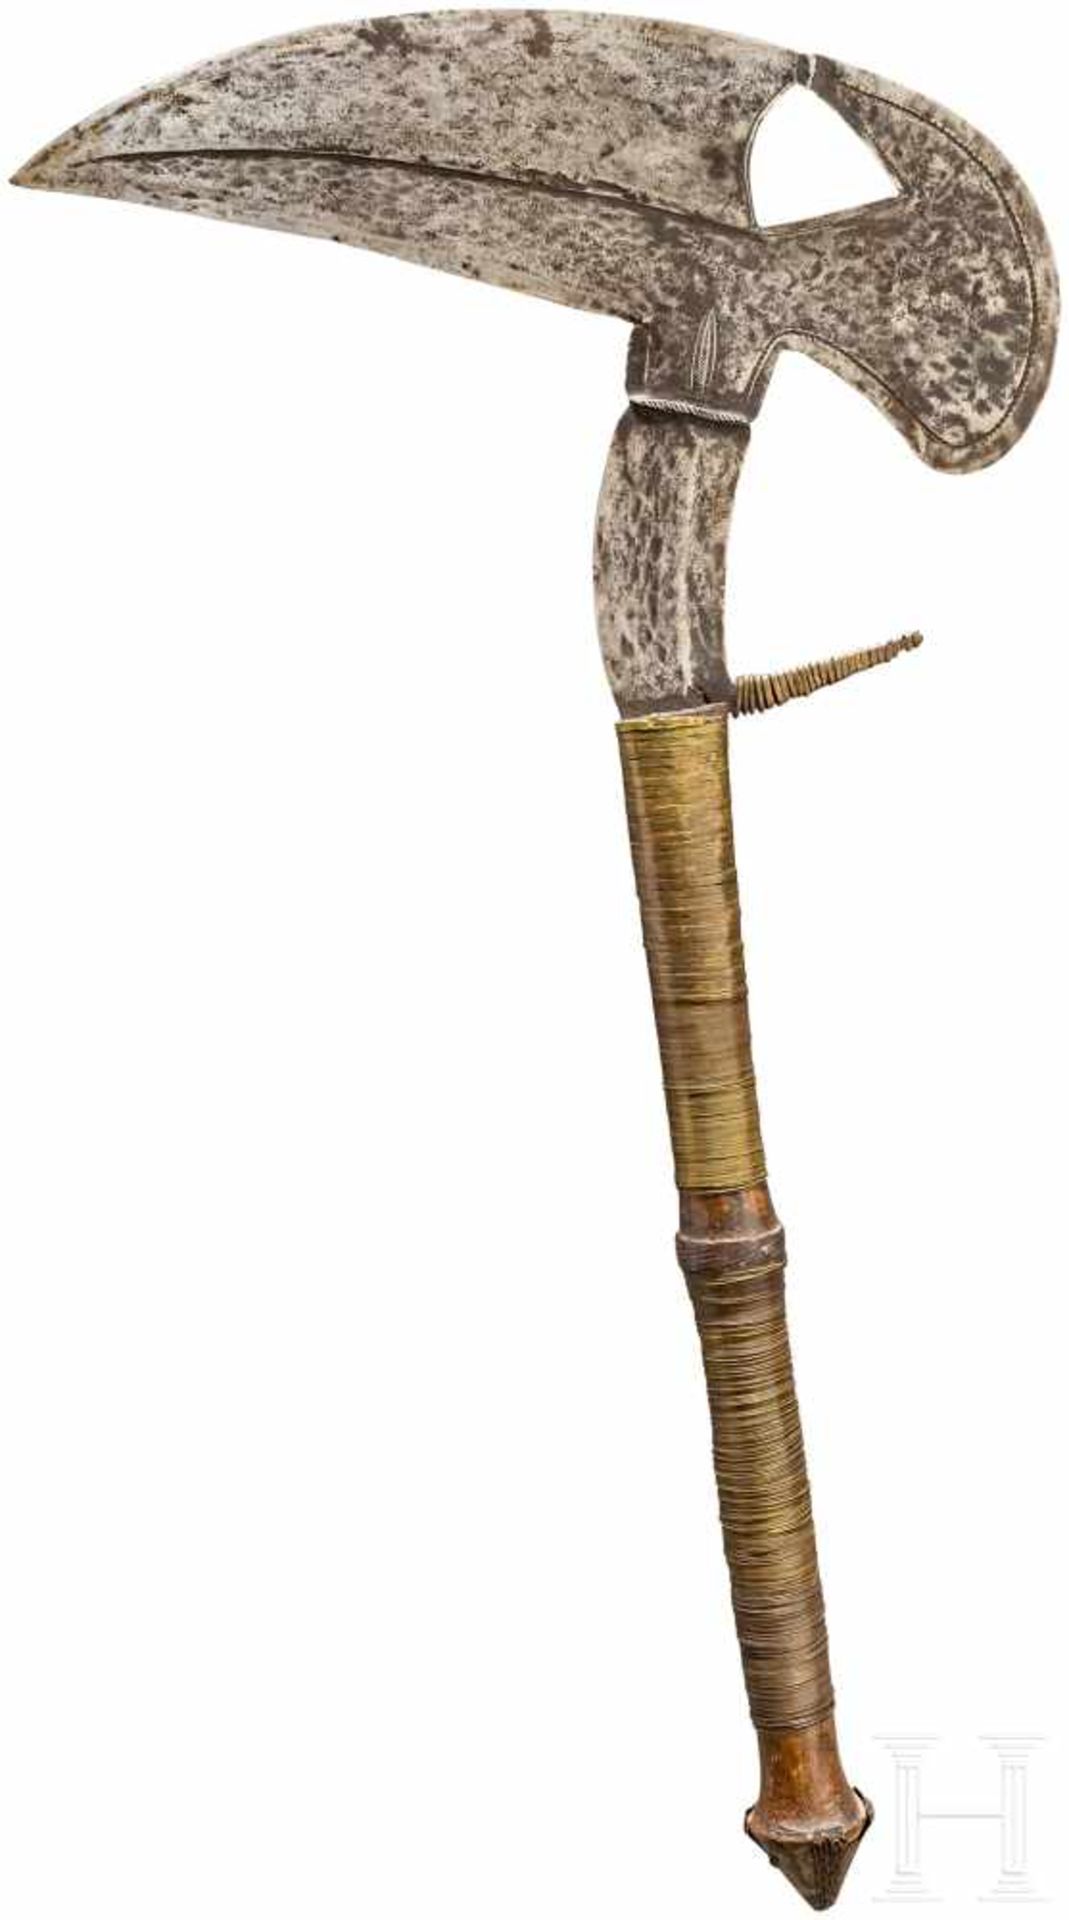 Großes Vogelkopfmesser der Kota/Fang, WestafrikaTypische, axtartig geformte Klinge mit dreieckigem